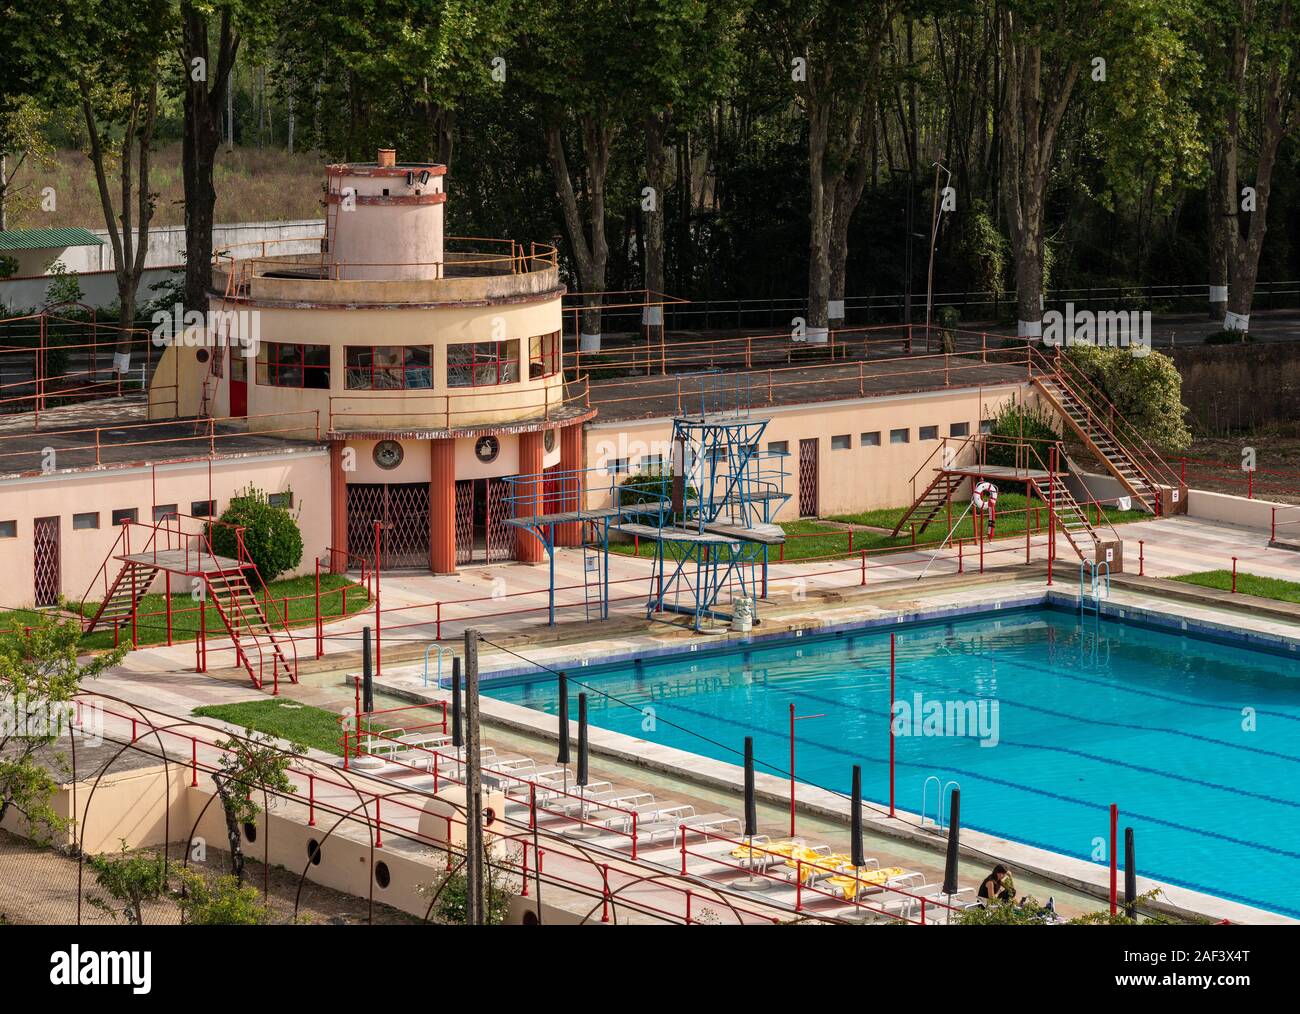 Anadia, Portugal - 19 August 2019: Olympisches Schwimmbad auf dem Gelände des historischen Curia Palace Hotel Stockfoto